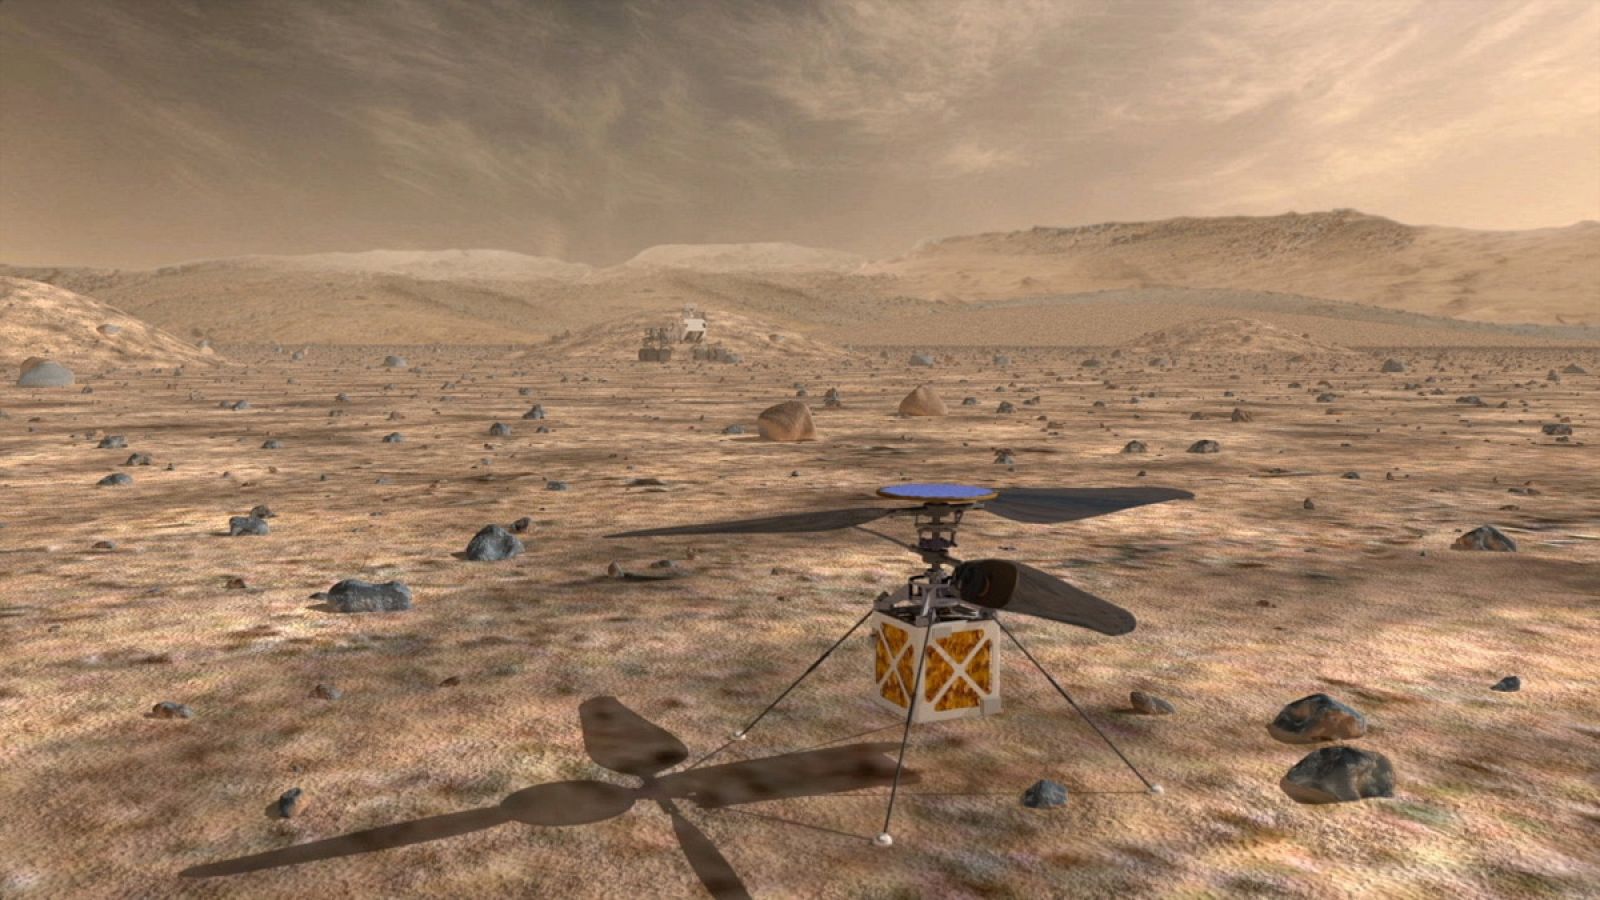 Mars Helicopter pesa poco menos de 1,8 kilos y su fuselaje tiene un diámetro de unos 30 centímetros.